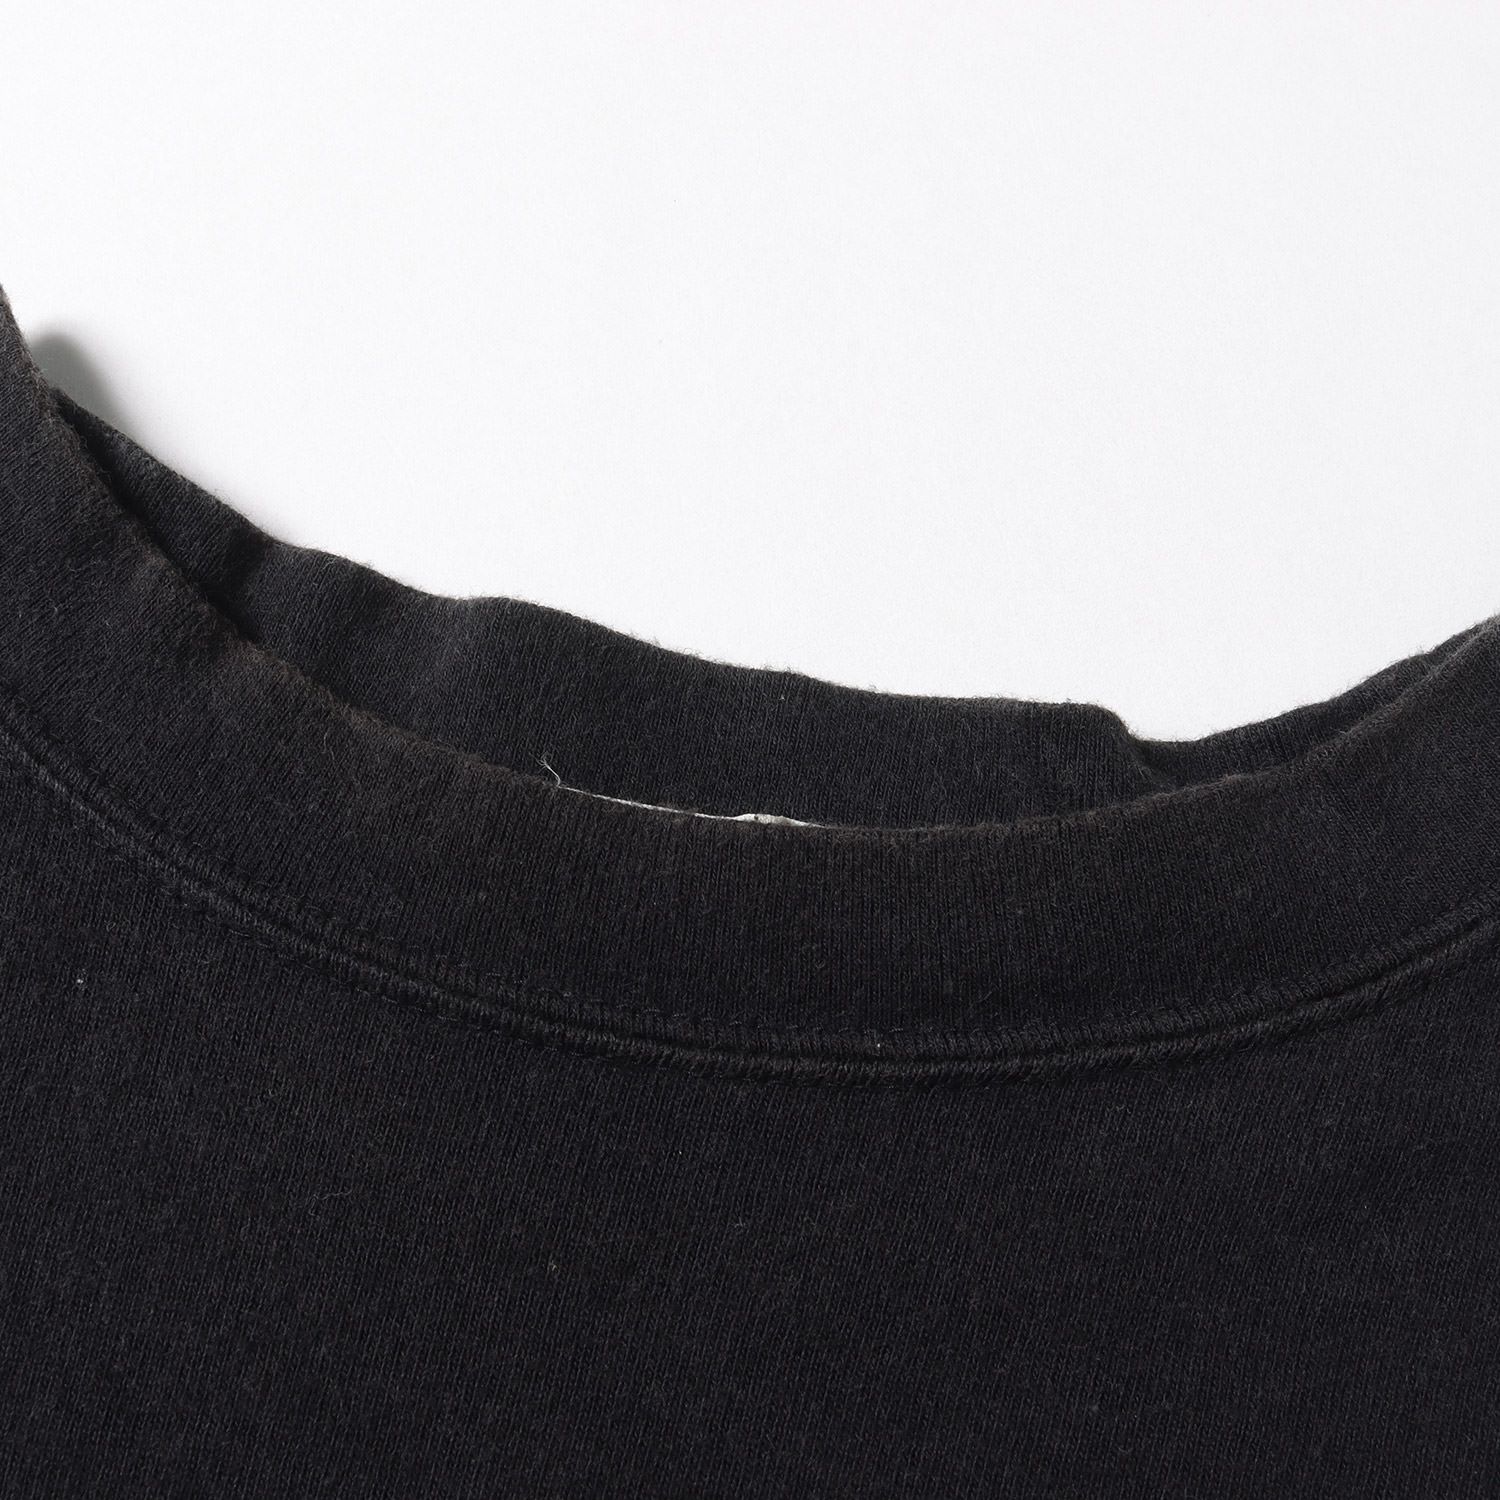 GOOD ENOUGH グッドイナフ Tシャツ サイズ:L 90s フェルト GEワッペン クルーネック 半袖 Tシャツ 1997年製 ブラック 黒 トップス カットソー 【メンズ】